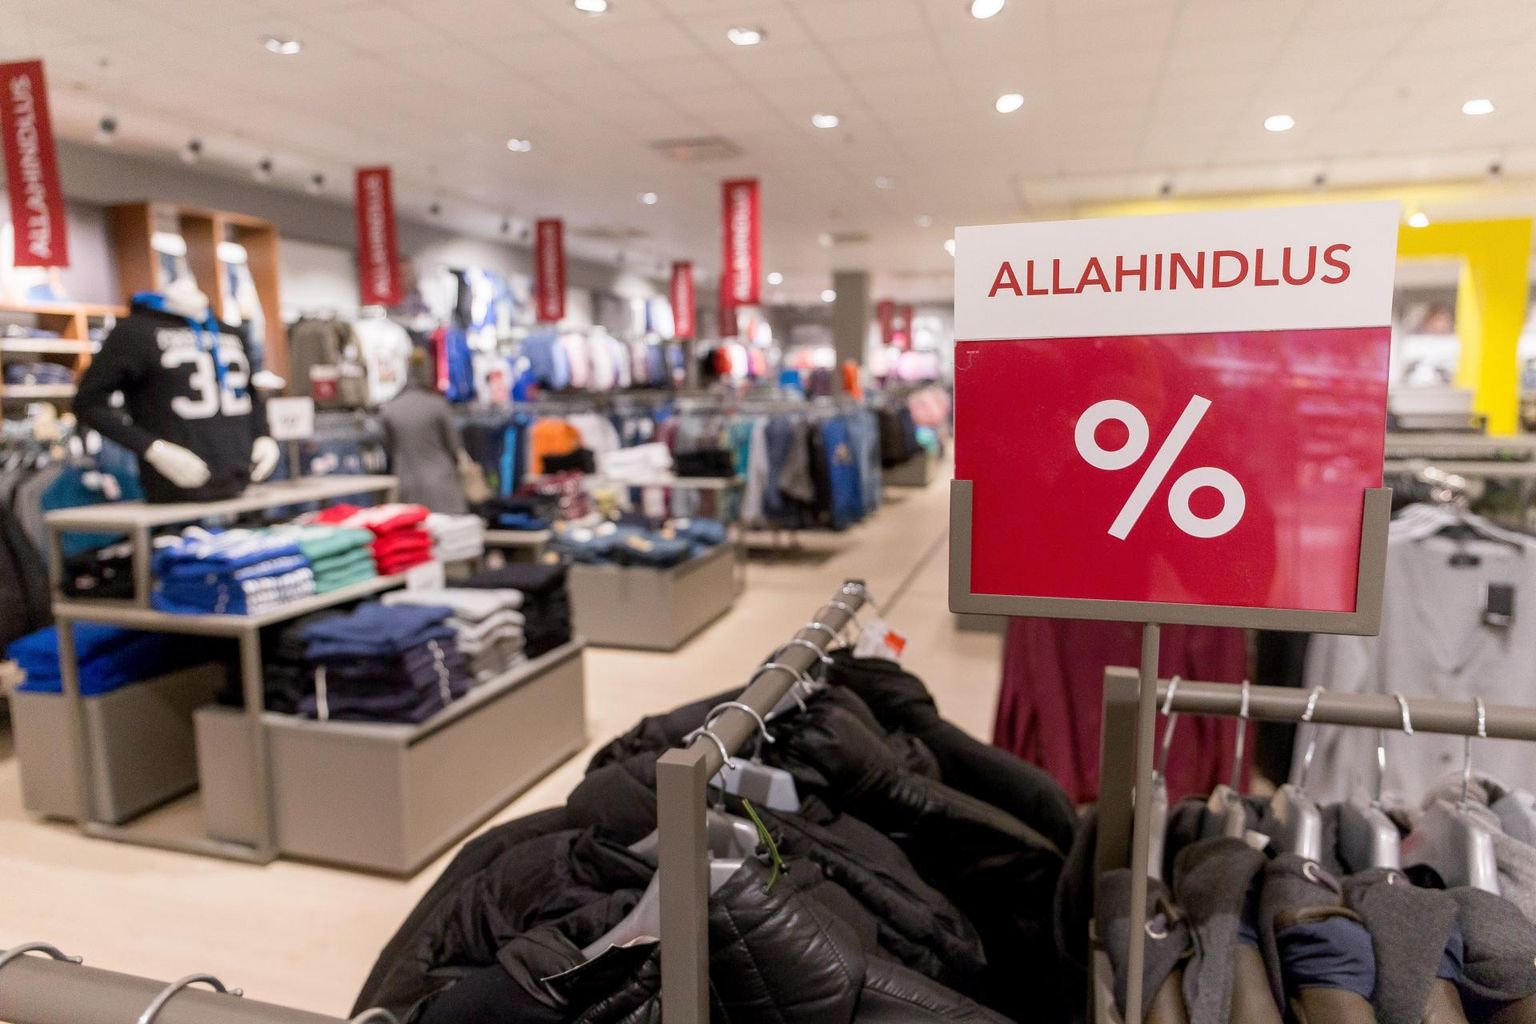 Жители Эстонии стали покупать меньше одежды и обуви, что может свидетельствовать об истощении сбережений.